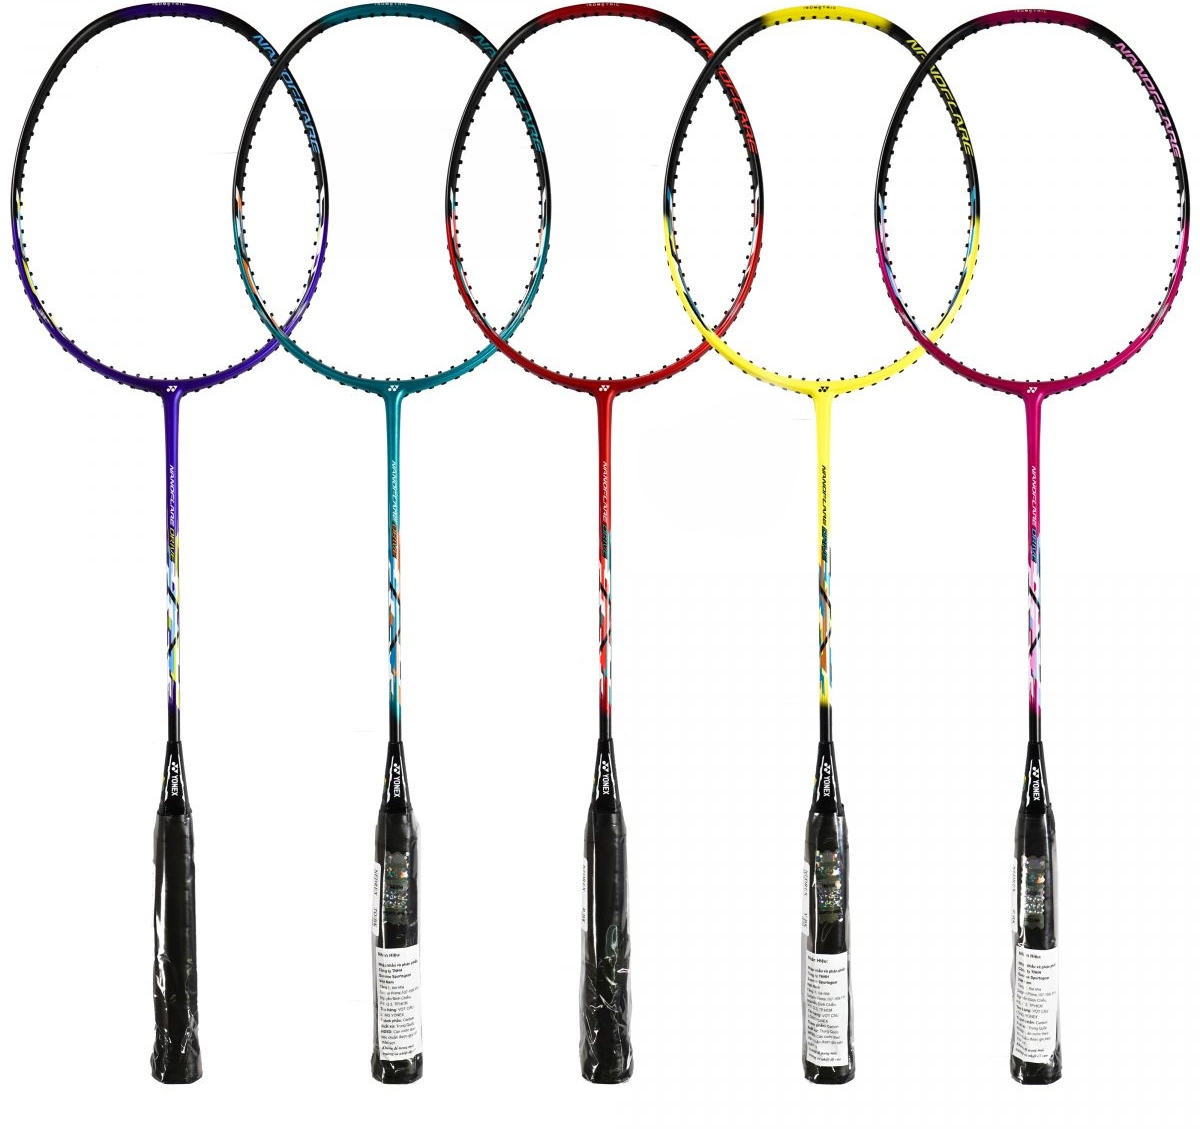 Top vợt cầu lông giá rẻ cho học sinh chất - bền - đẹp.